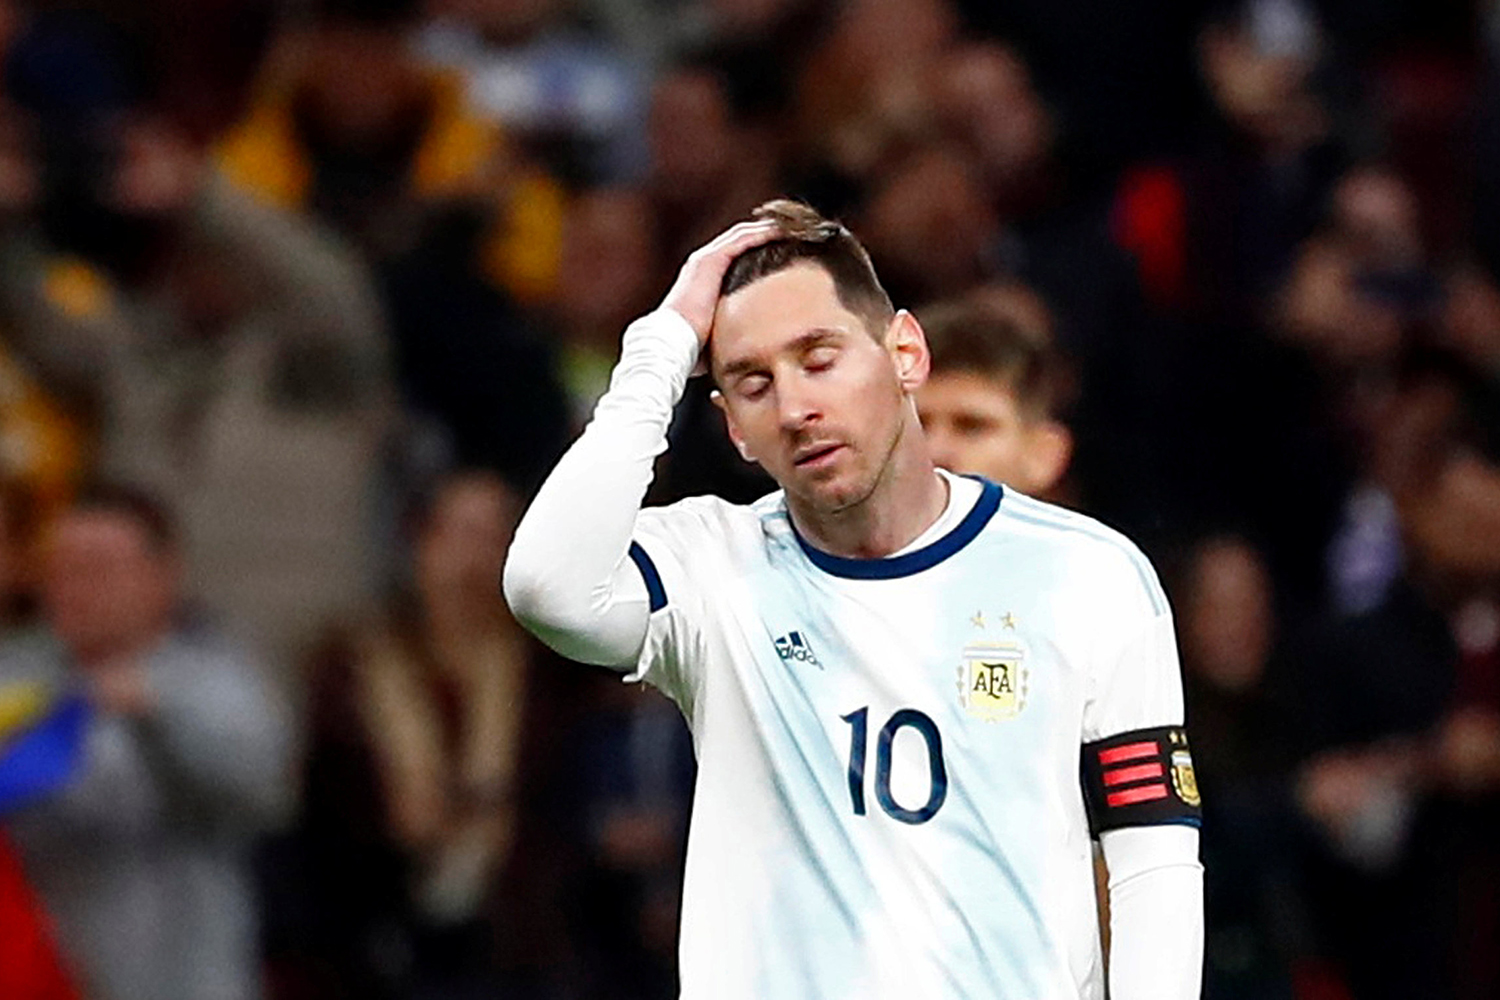 Treinador do Barcelona revela que Messi tem lesão no púbis